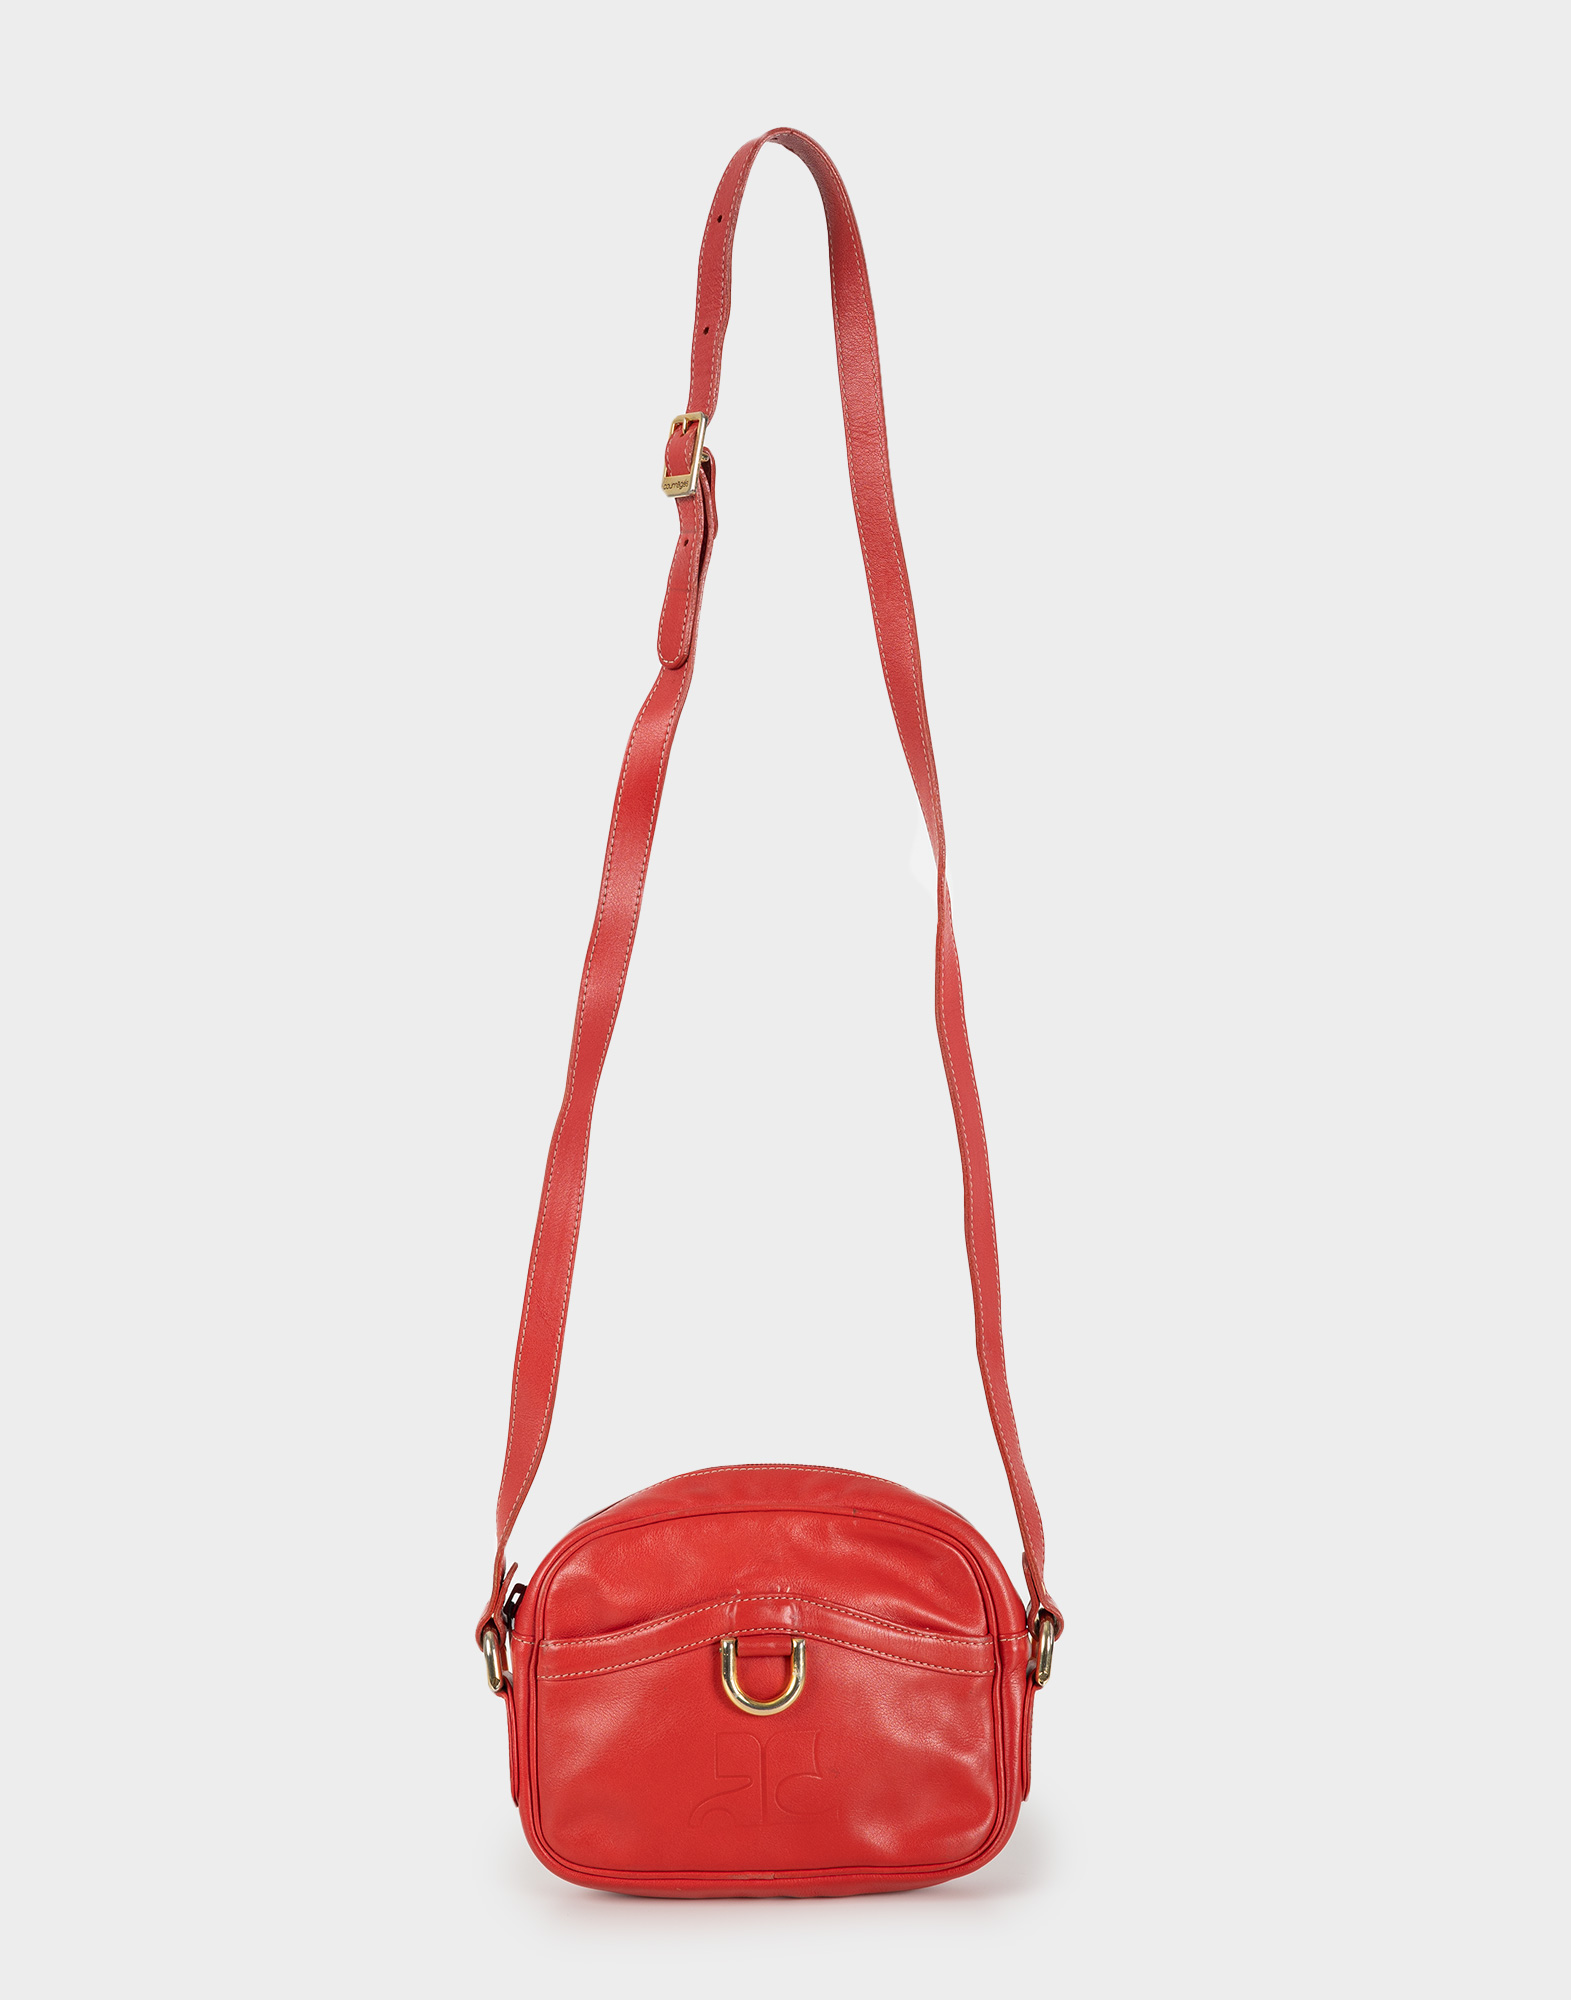 borsa rossa piccola da donna in pelle con tracolla regolabile fotografata su sfondo grigio